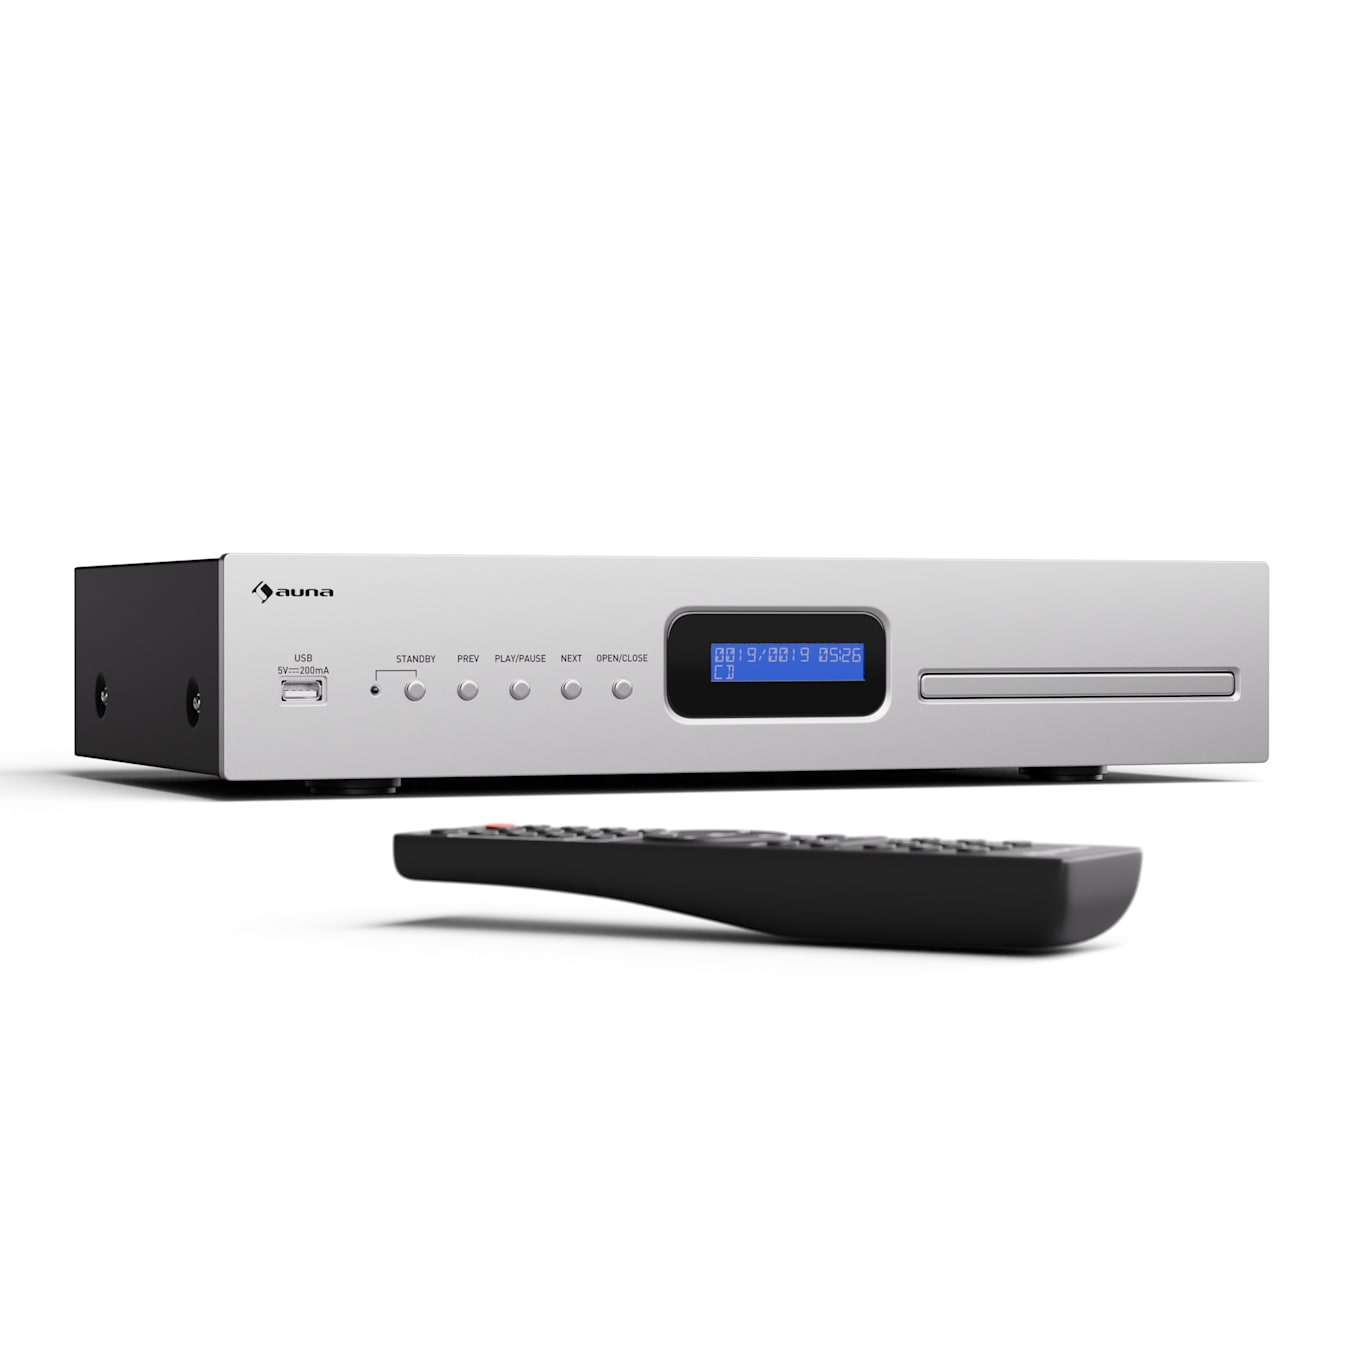 auna Art22 Reproductor de CD MP3 Boombox DAB+/FM Radio Reproductor de CD/MP3  3W Pantalla TFT Bluetooth USB portátil Plata